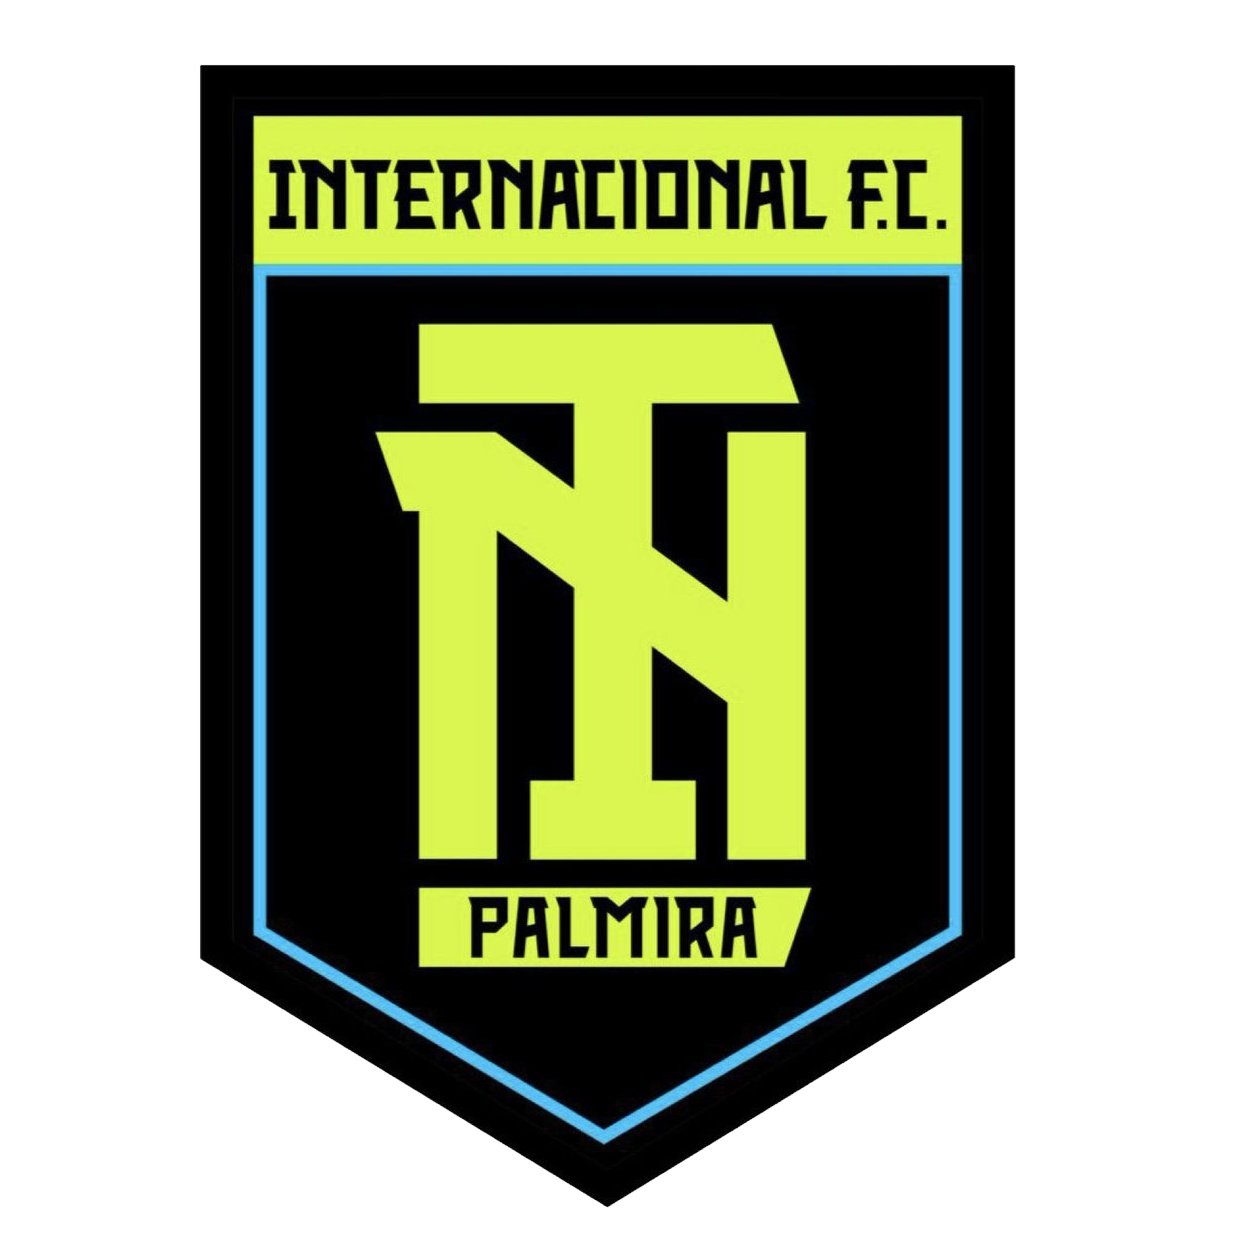 Escudo del Internacional FC de Palmira